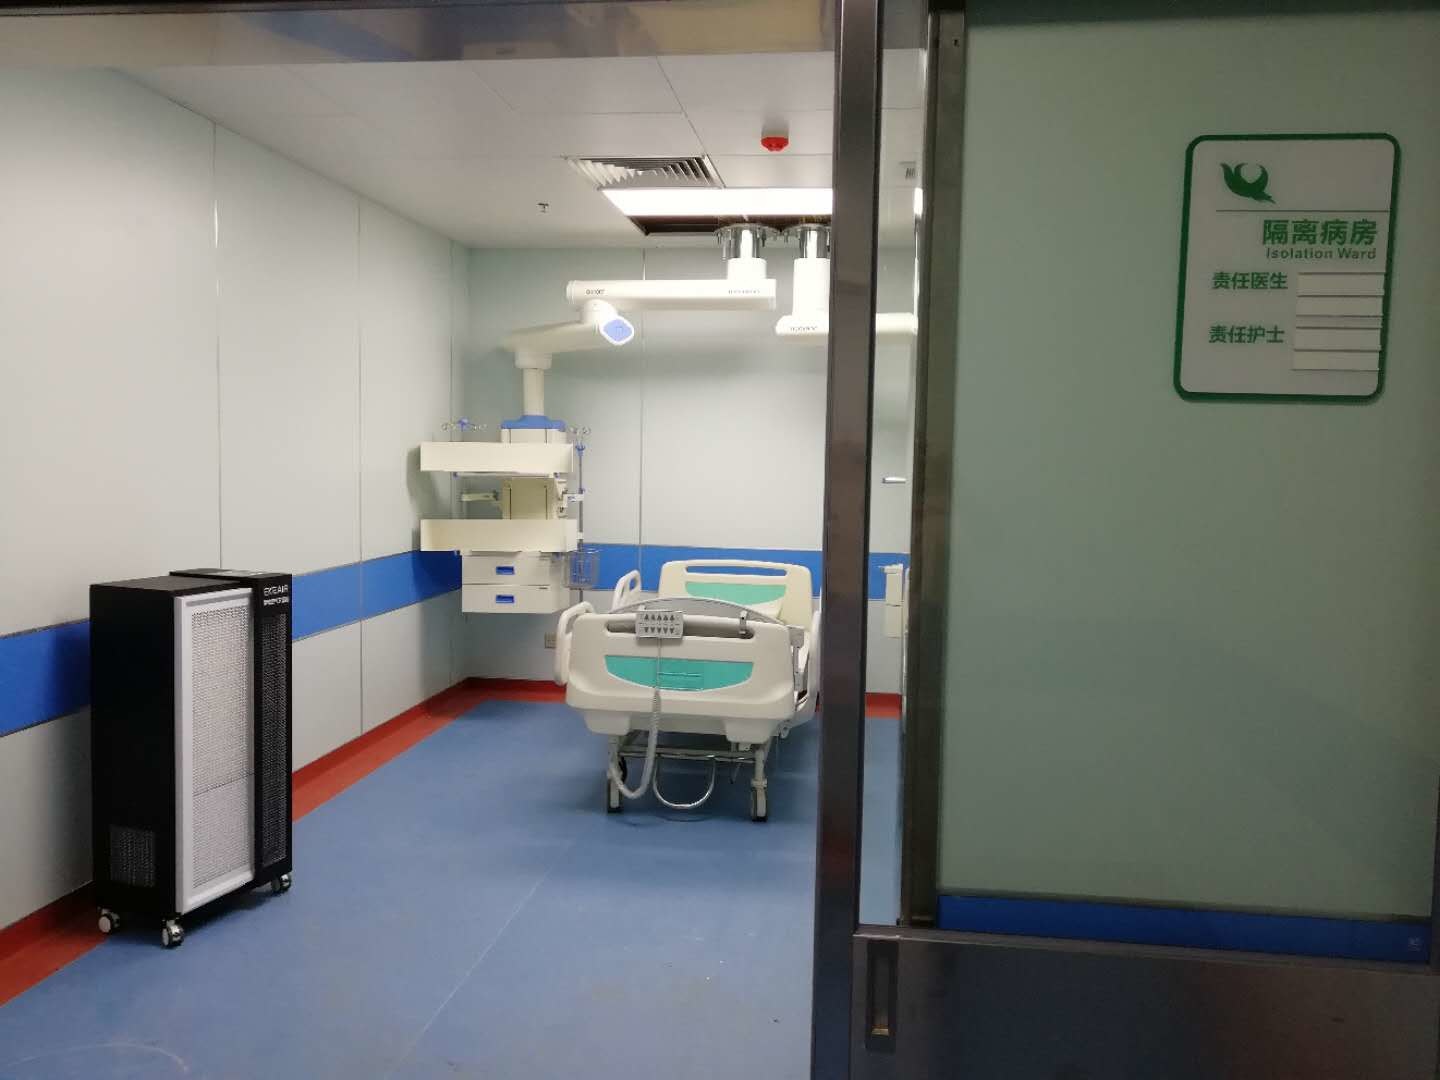 กรณี บริษัท ล่าสุดเกี่ยวกับ วิทยาเขตใหม่โรงพยาบาลแห่งที่สี่ของมหาวิทยาลัยการแพทย์อันฮุย